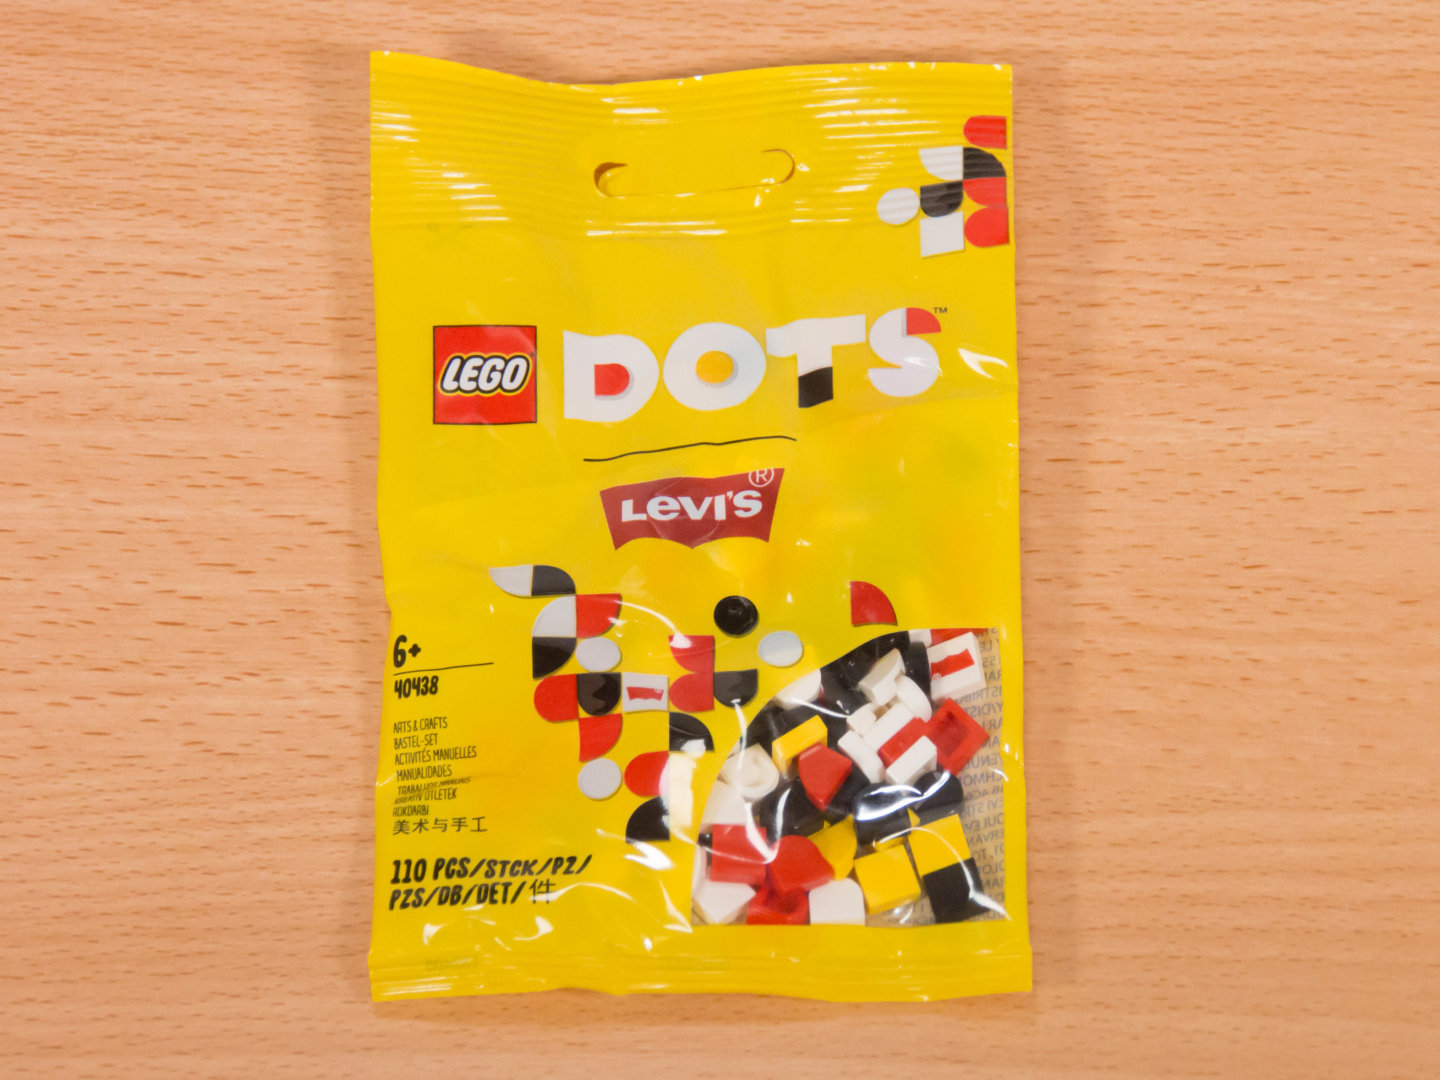 toymim撮影2：レゴ ドッツ リーバイス×レゴ コラボアイテム付属品 40438